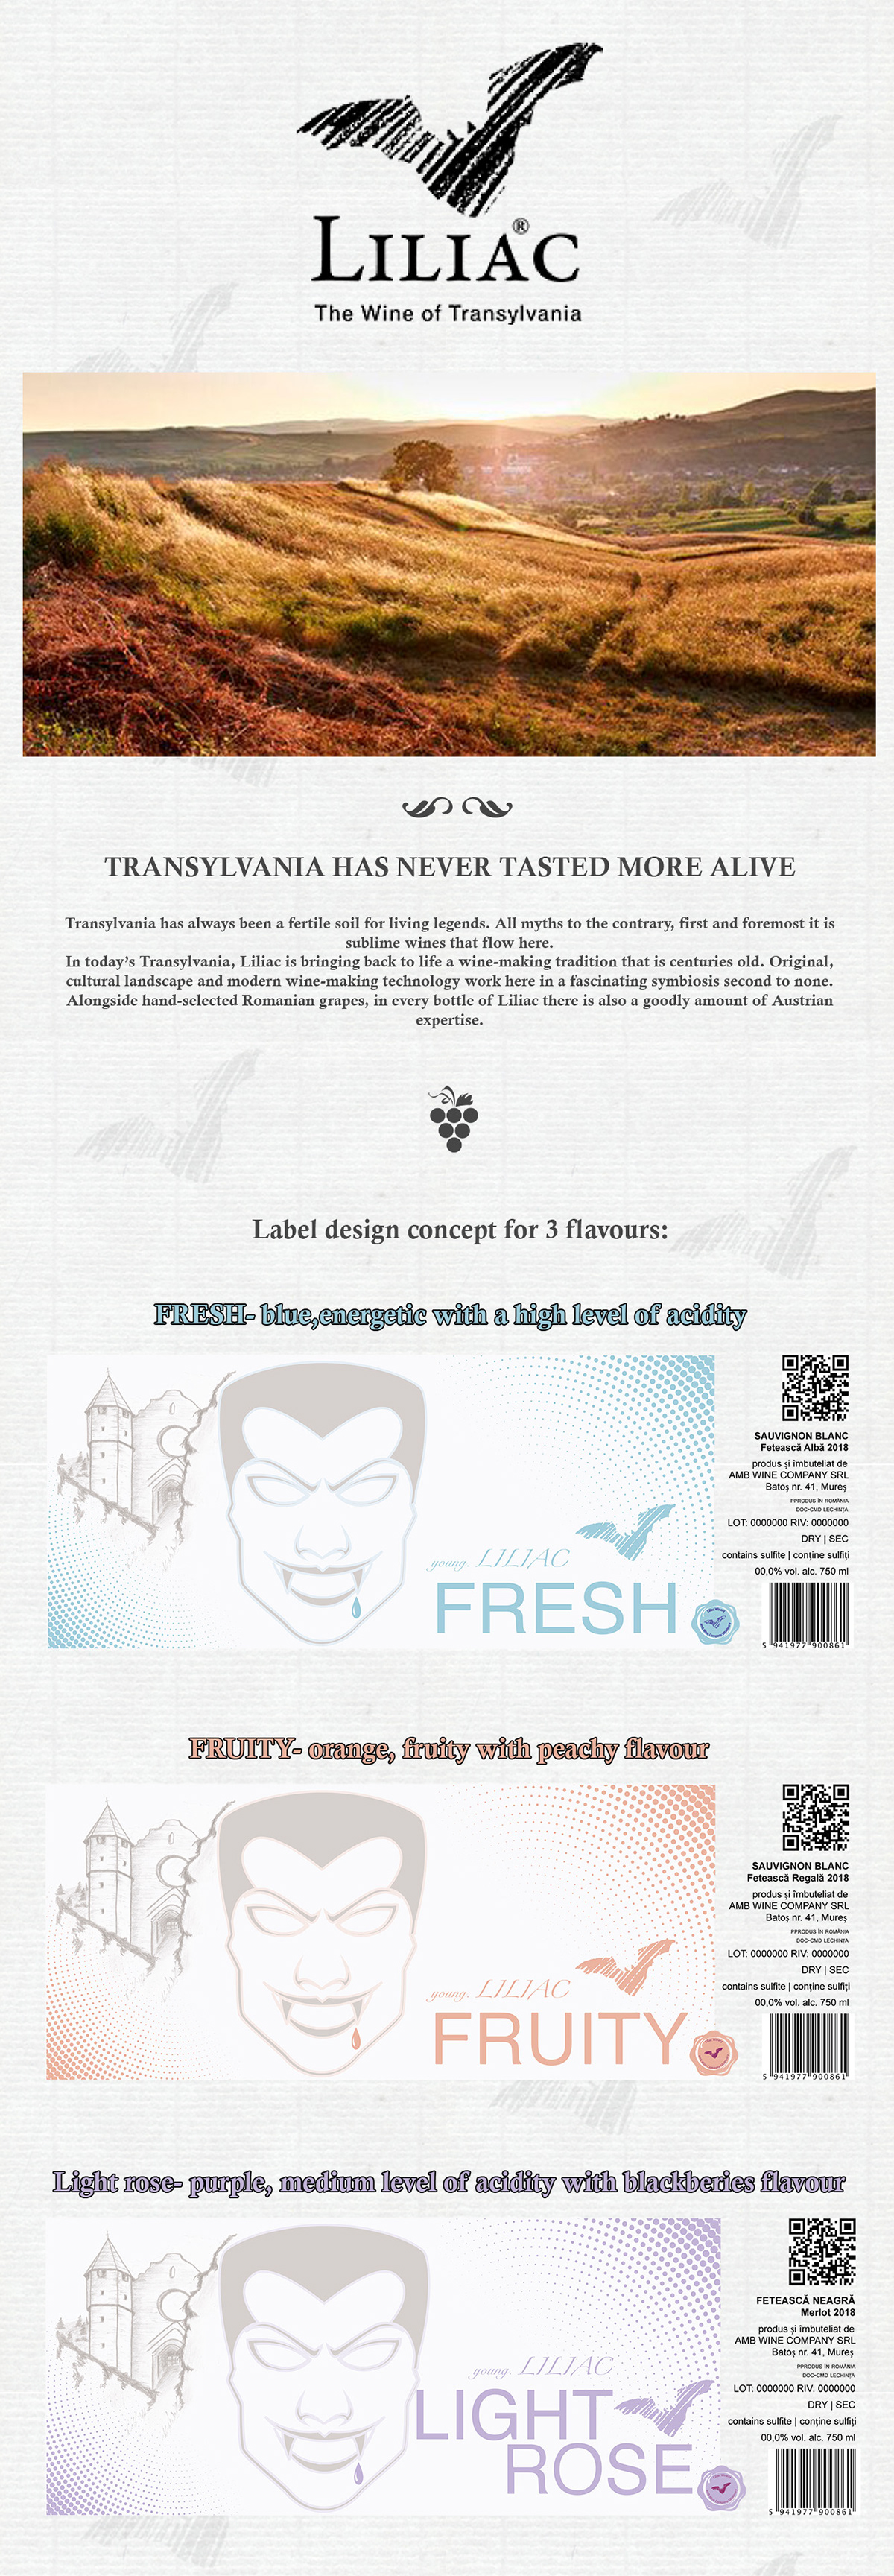 label design branding  product design  graphic design  Wine label Design labeling